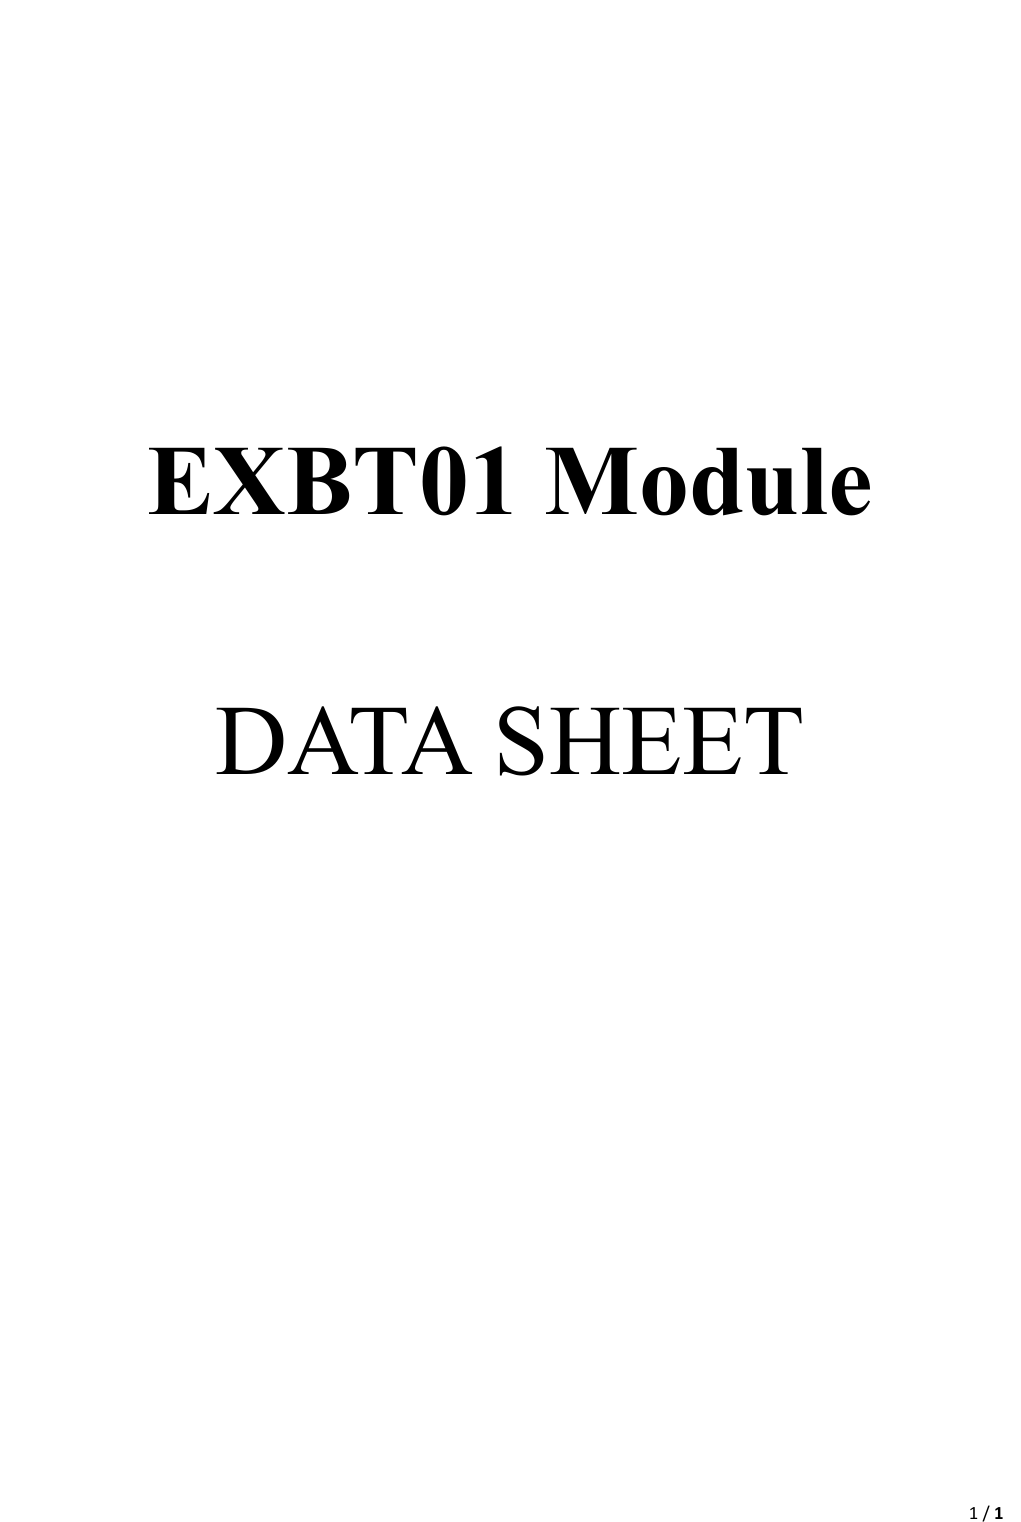                                                                                                                                                                                                                                         1 / 1                                                                                    EXBT01 Module   DATA SHEET    